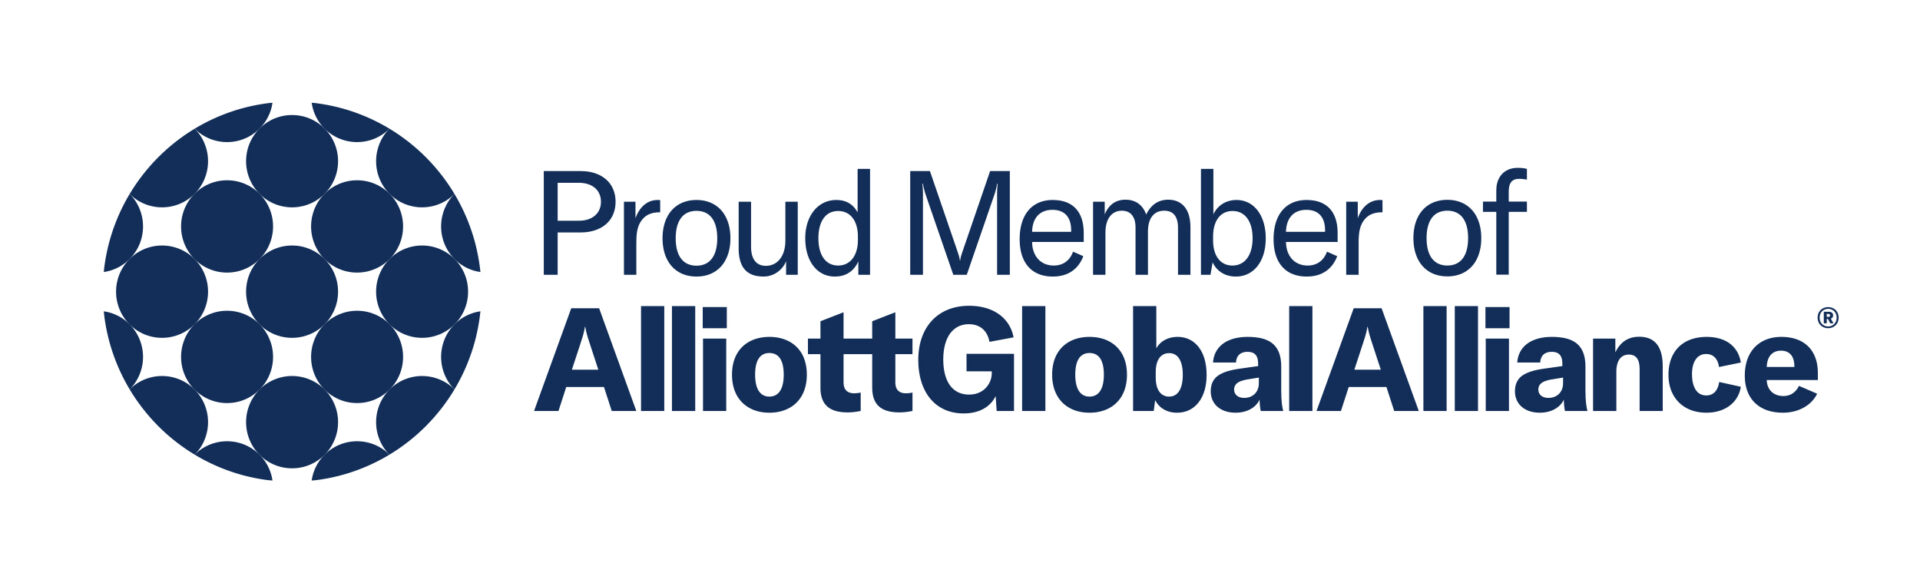 Alliott Global Alliance logo